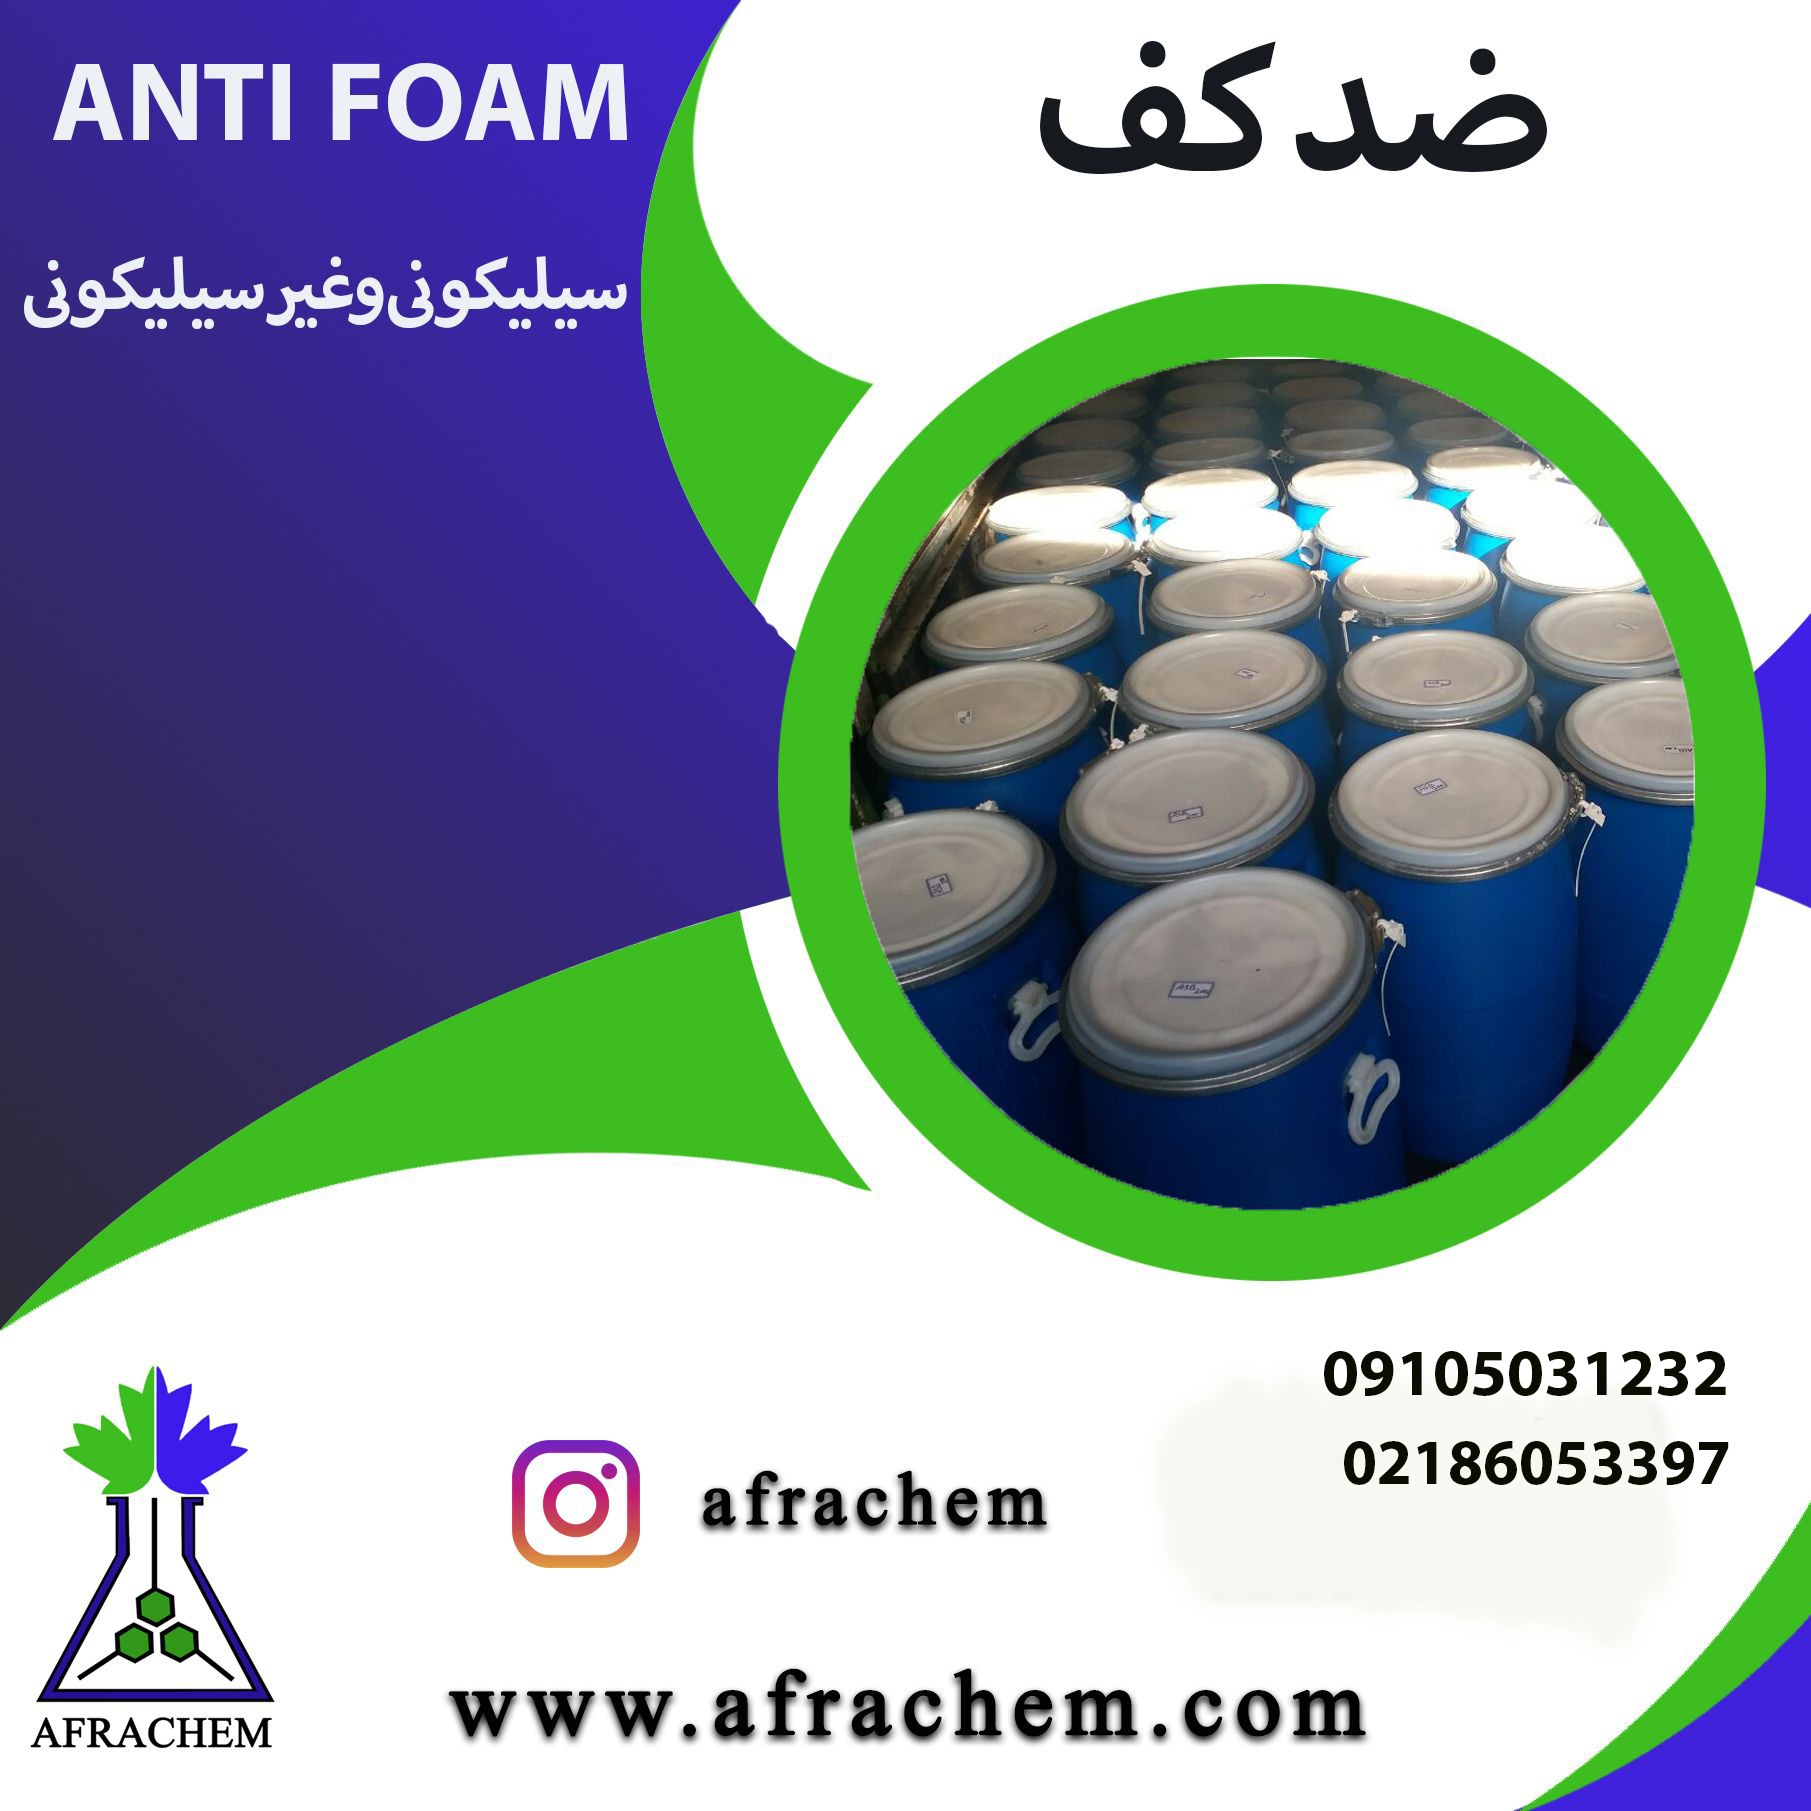 تولید کننده/صادر کننده انتی فوم (Anti foam)